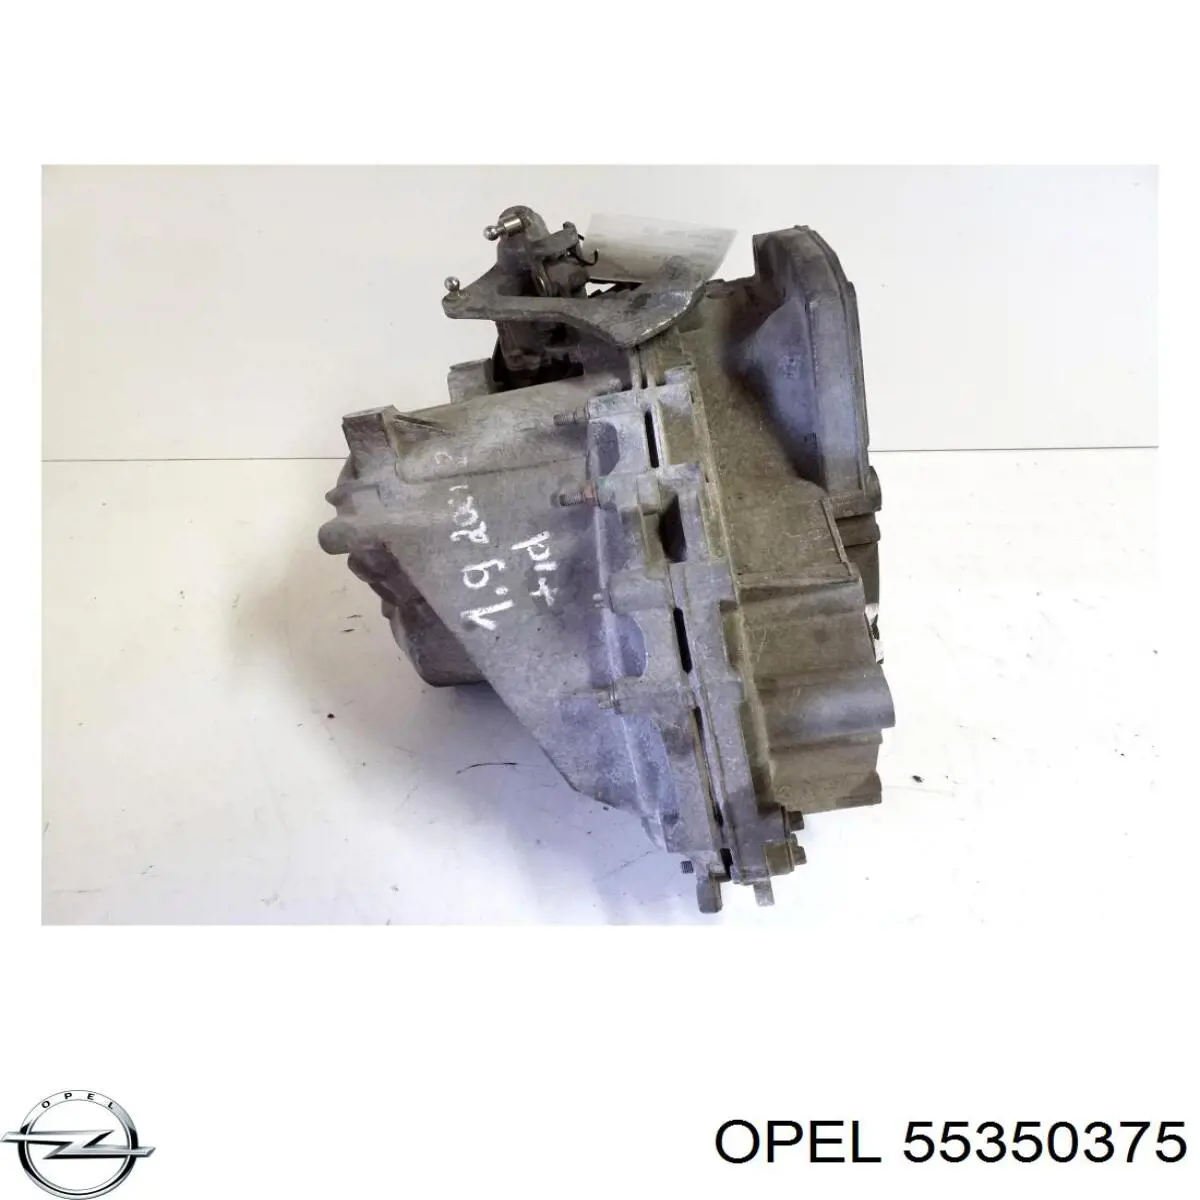 55350375 Opel caixa de mudança montada (caixa mecânica de velocidades)